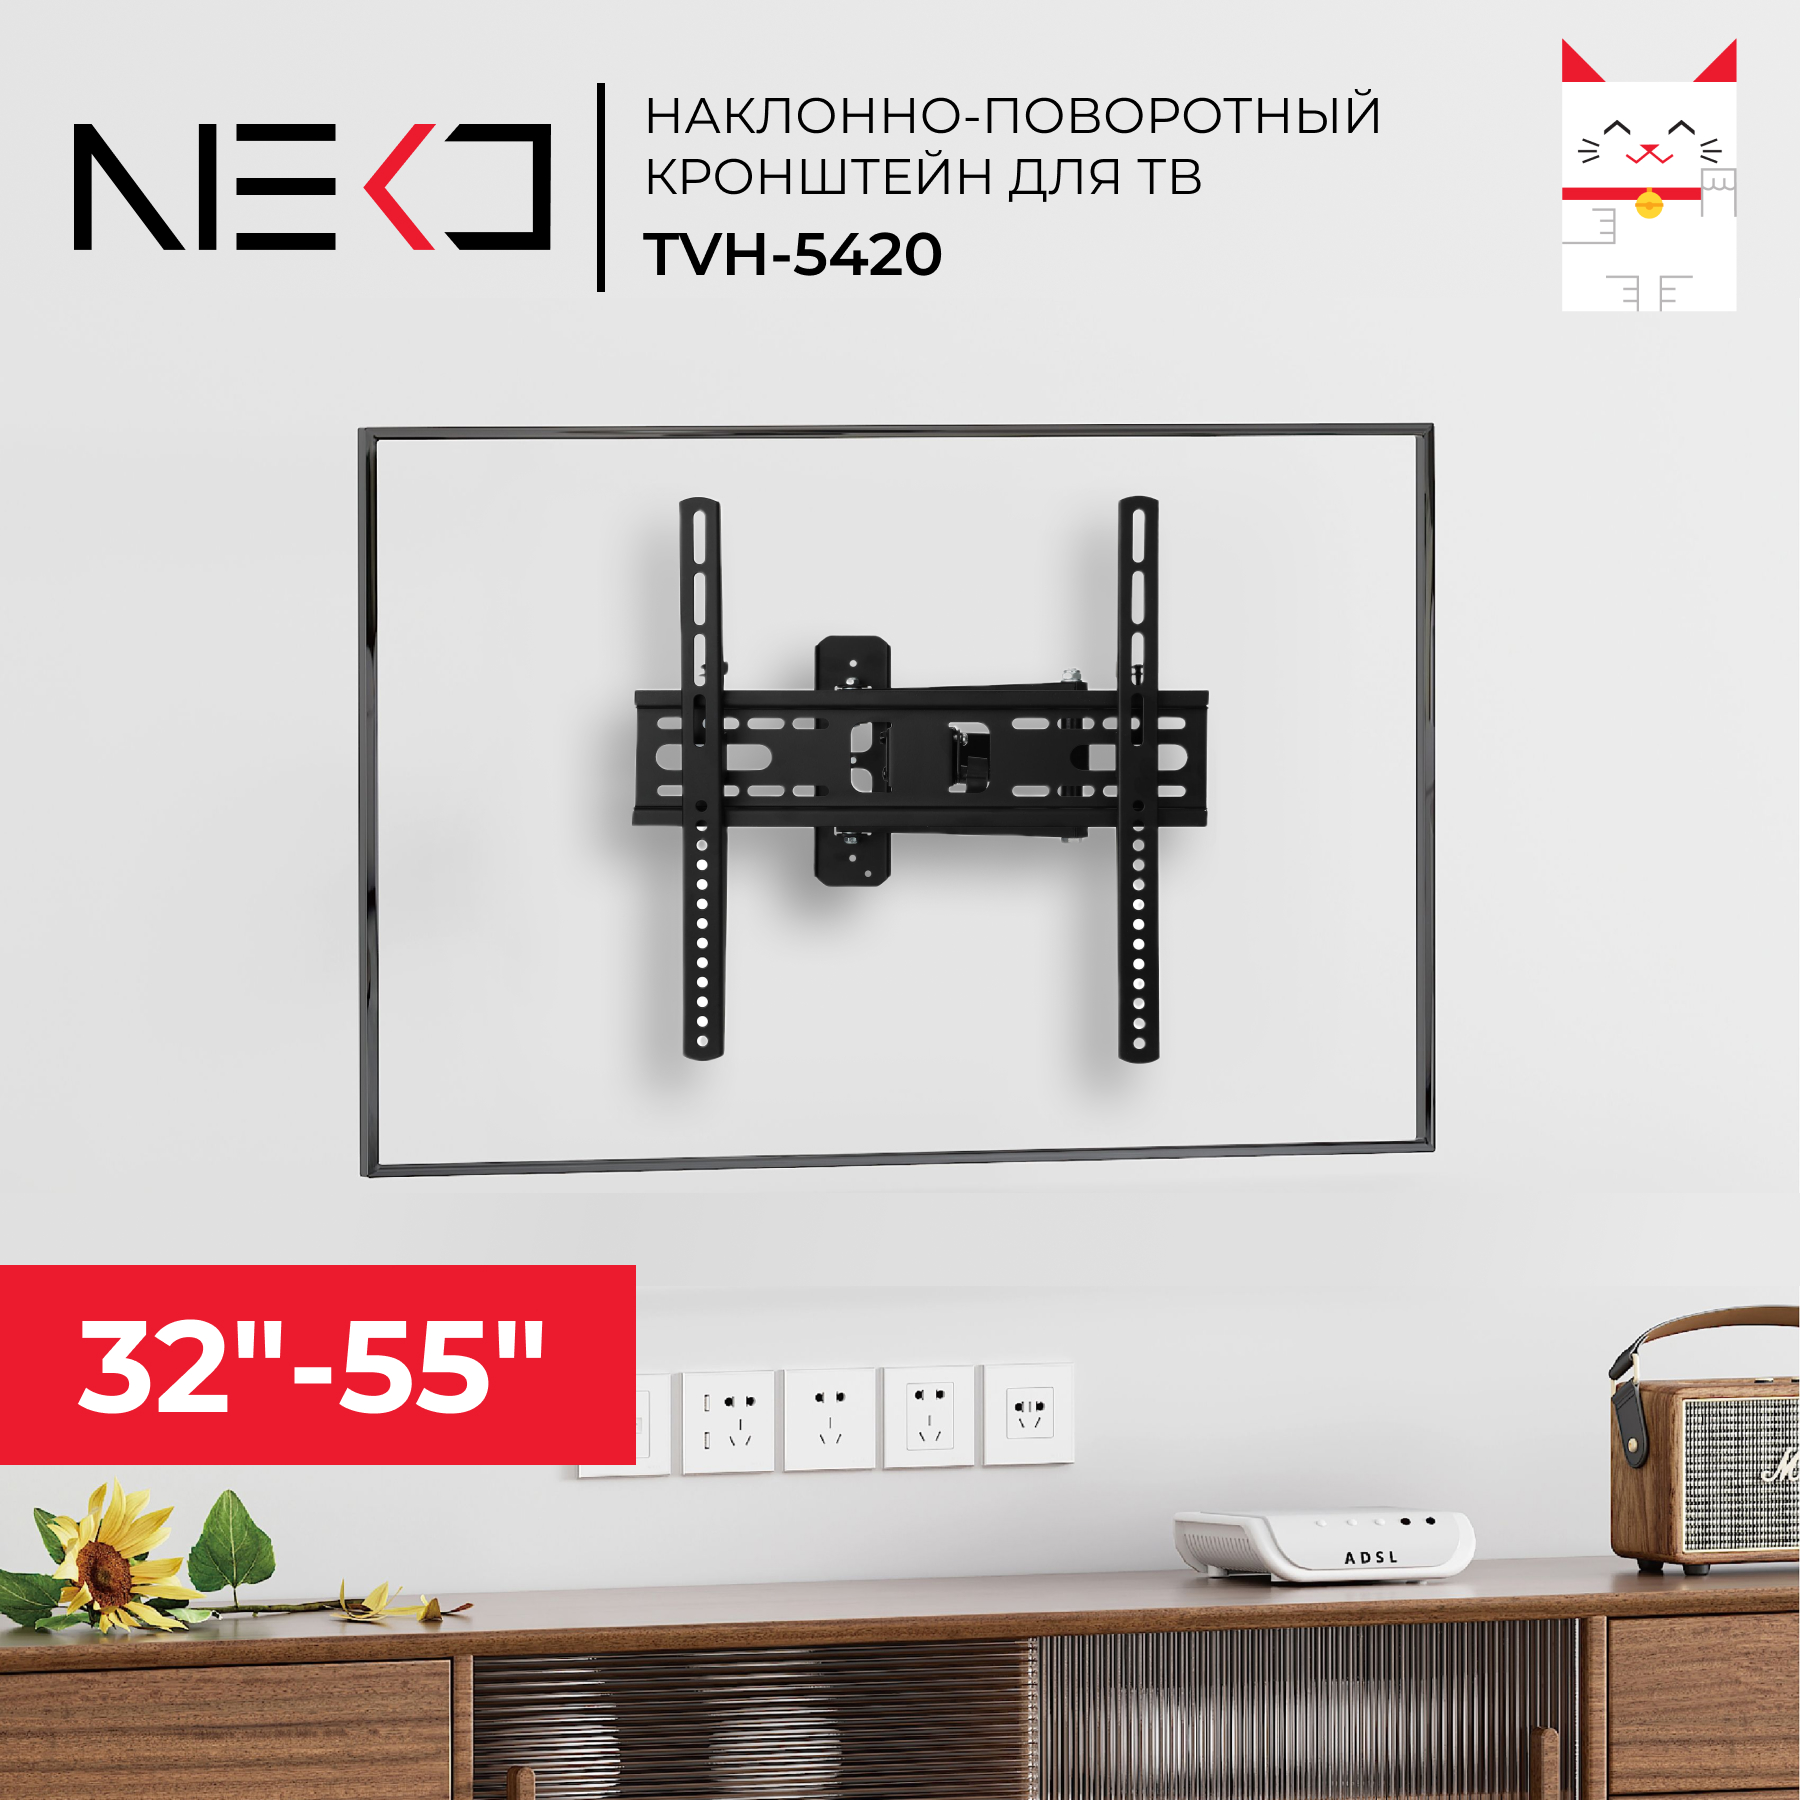 Наклонно-поворотный кронштейн для телевизора Neko TVH-5420 32-55 черный